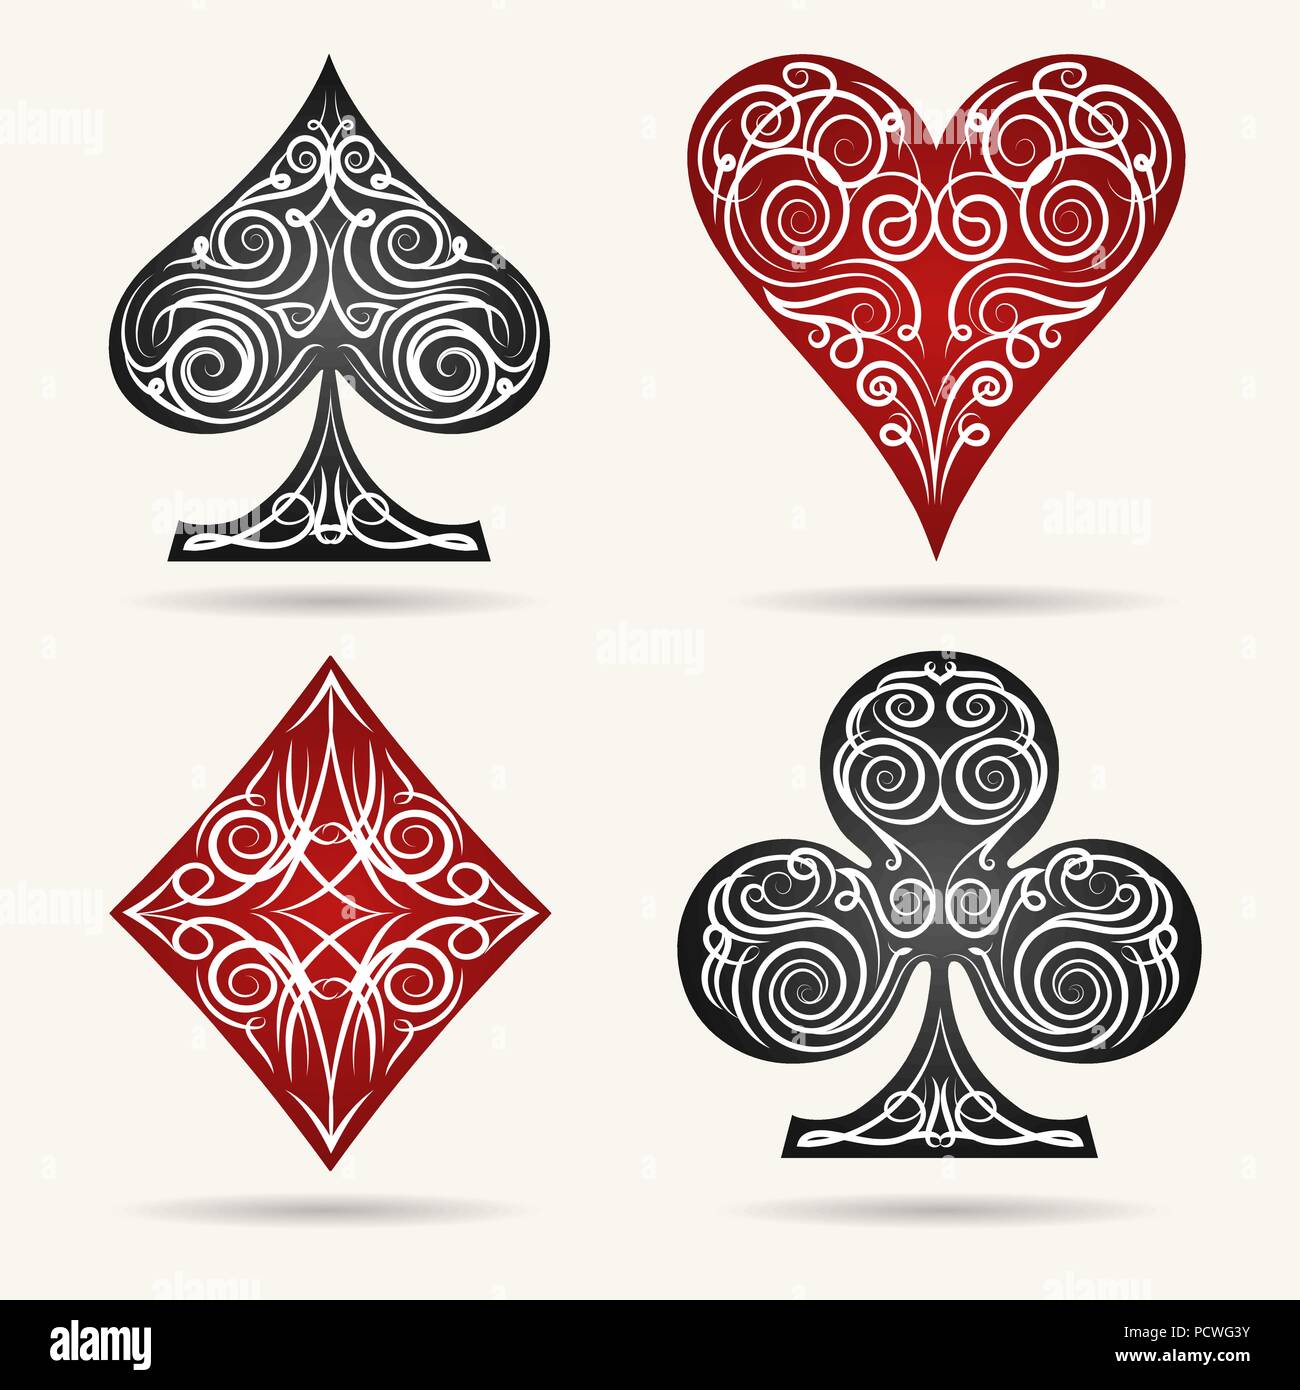 Carte as poker - card play game Stock Vector